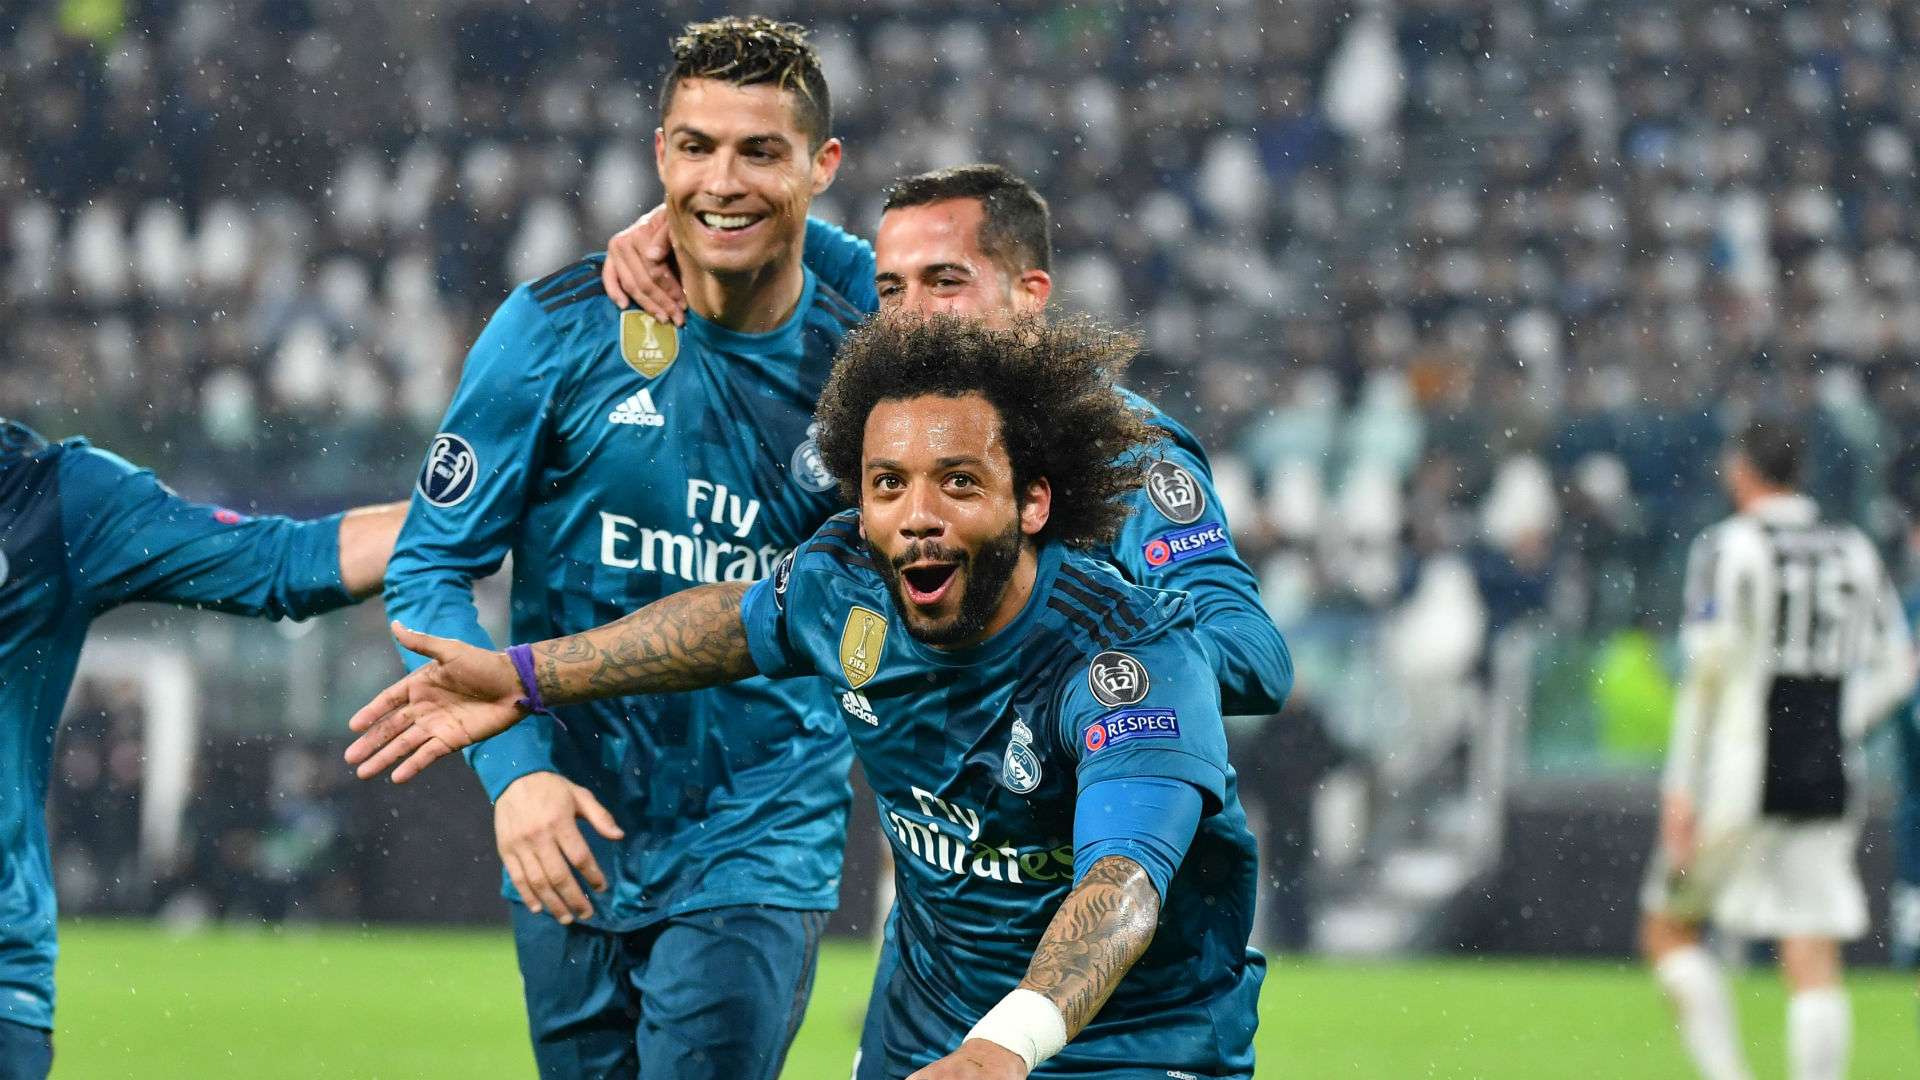 Marcelo Cristiano Ronaldo Lucas Vasquez Real Madrid Juventus Champions League  03 04 2018